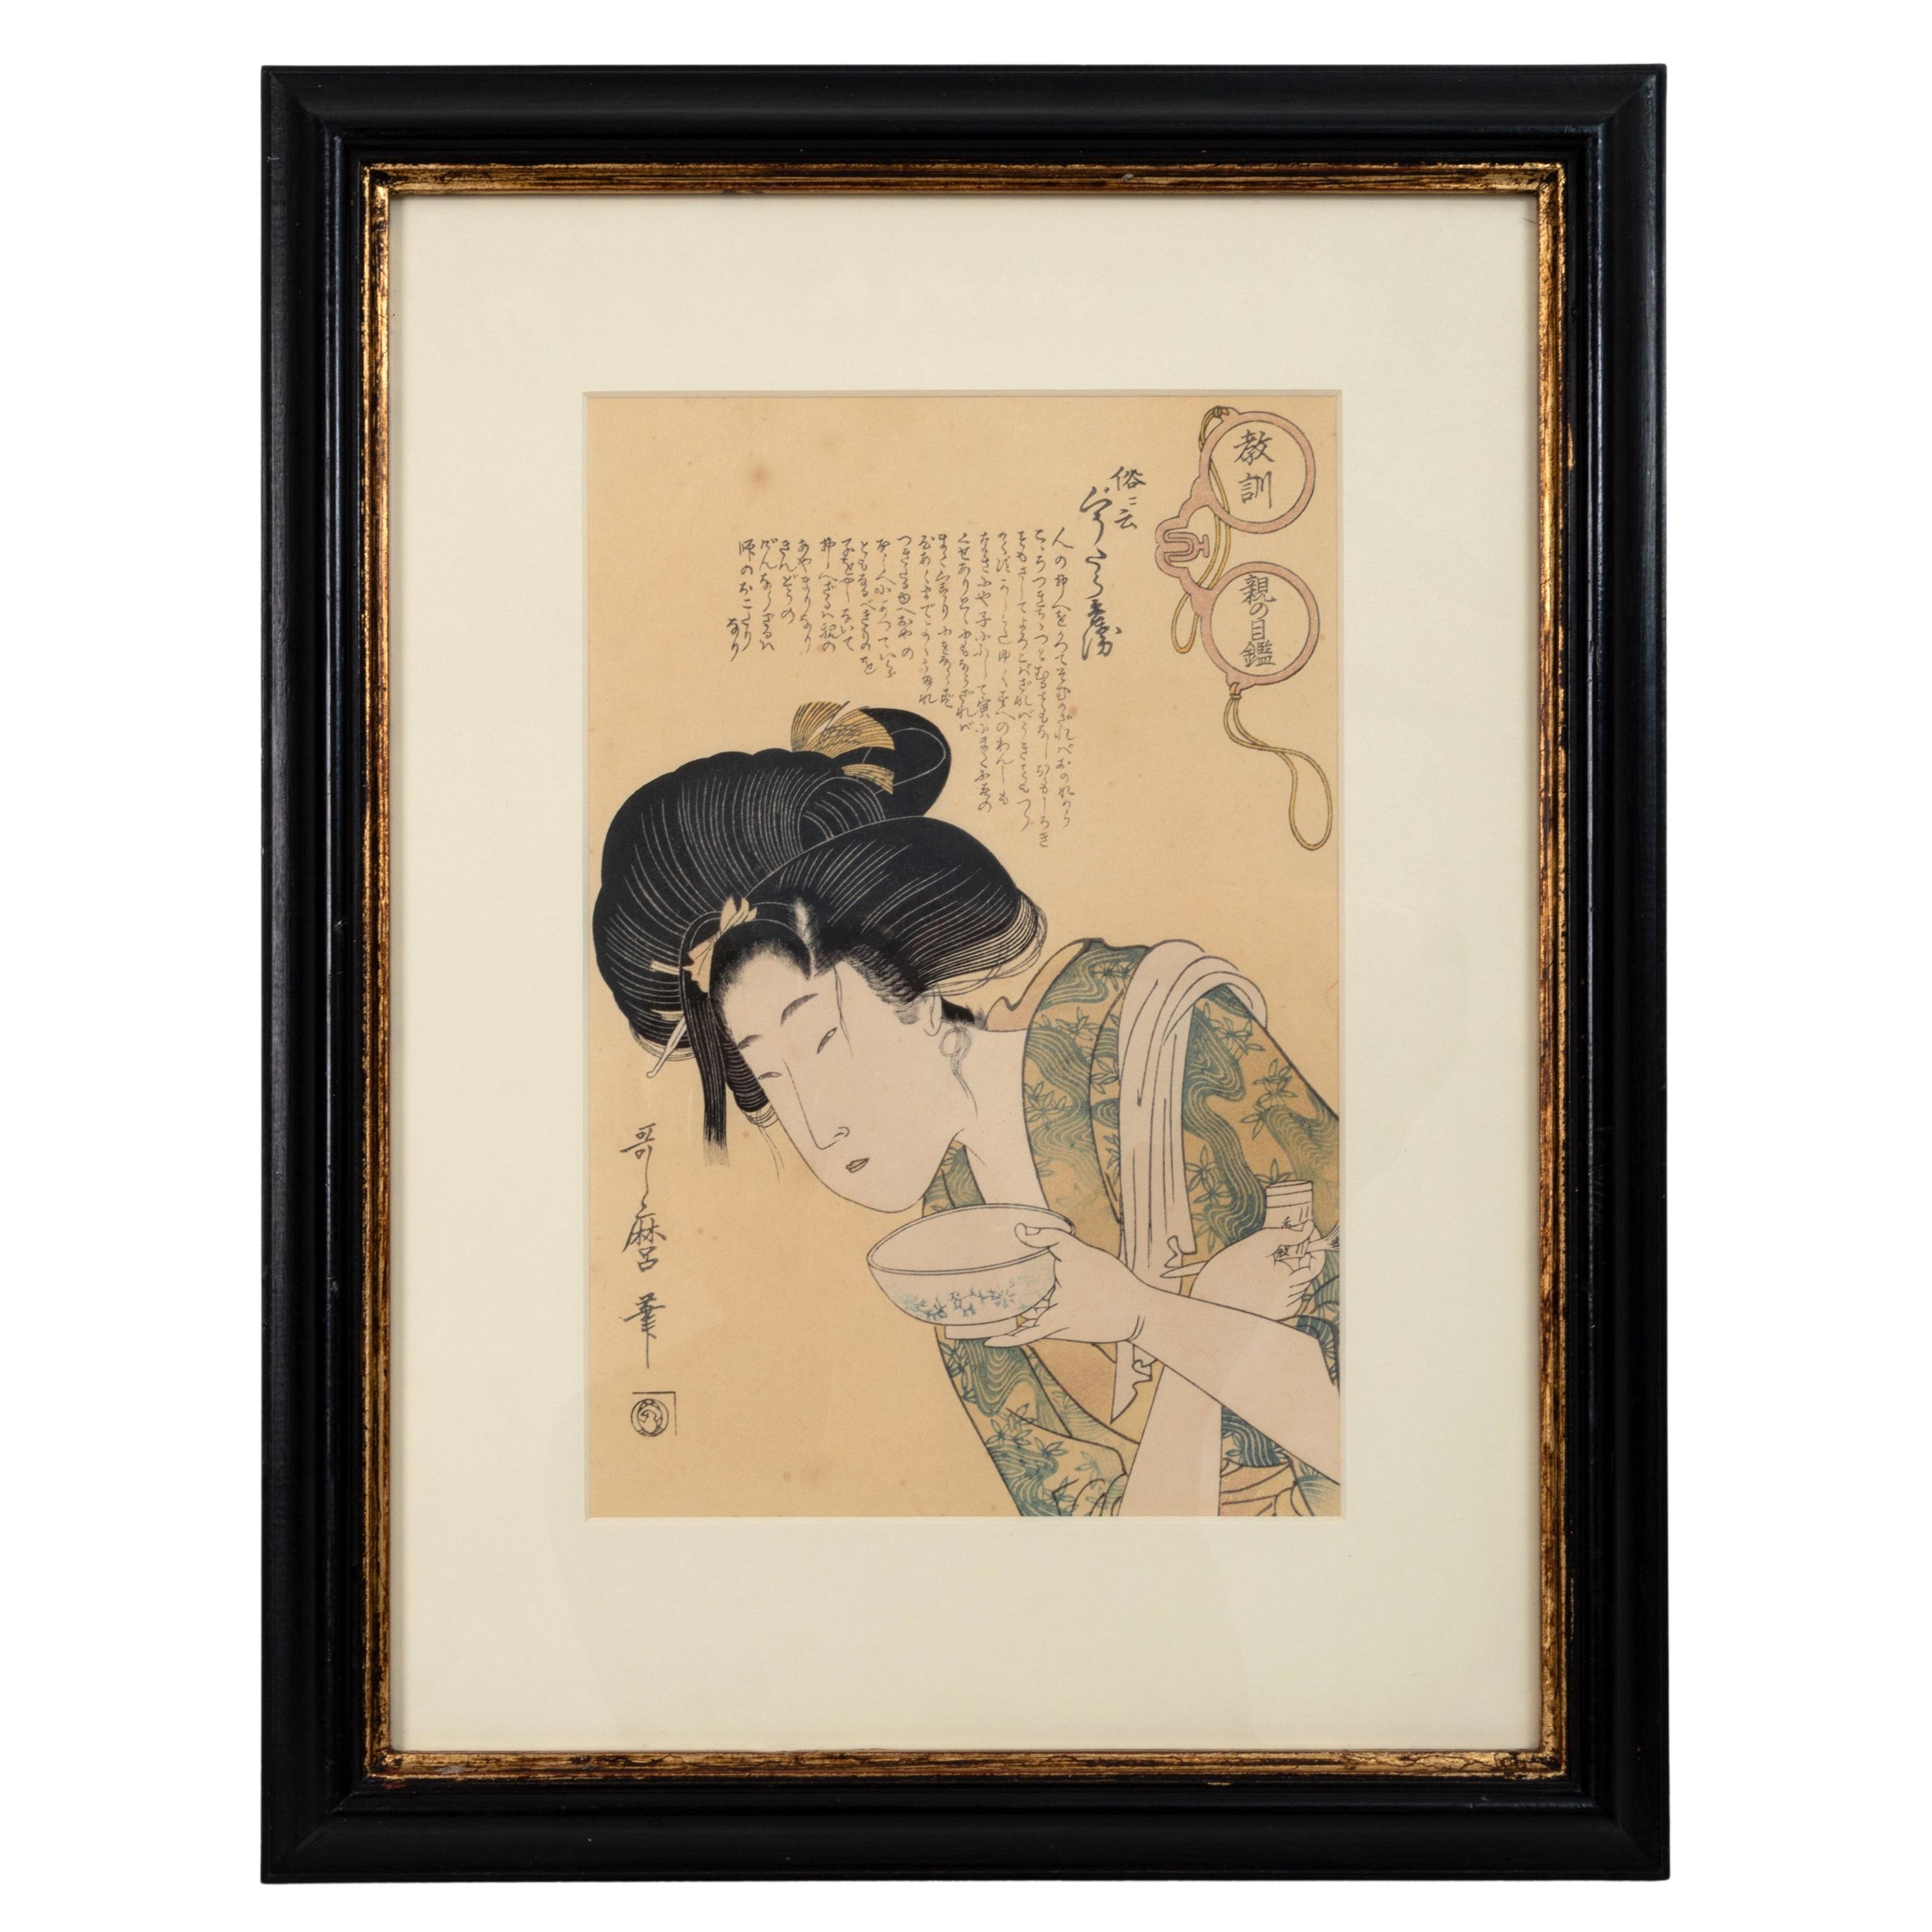 Impression sur bois japonaise d'un courtisan, Kitagawa Utamaro, début du XXe siècle